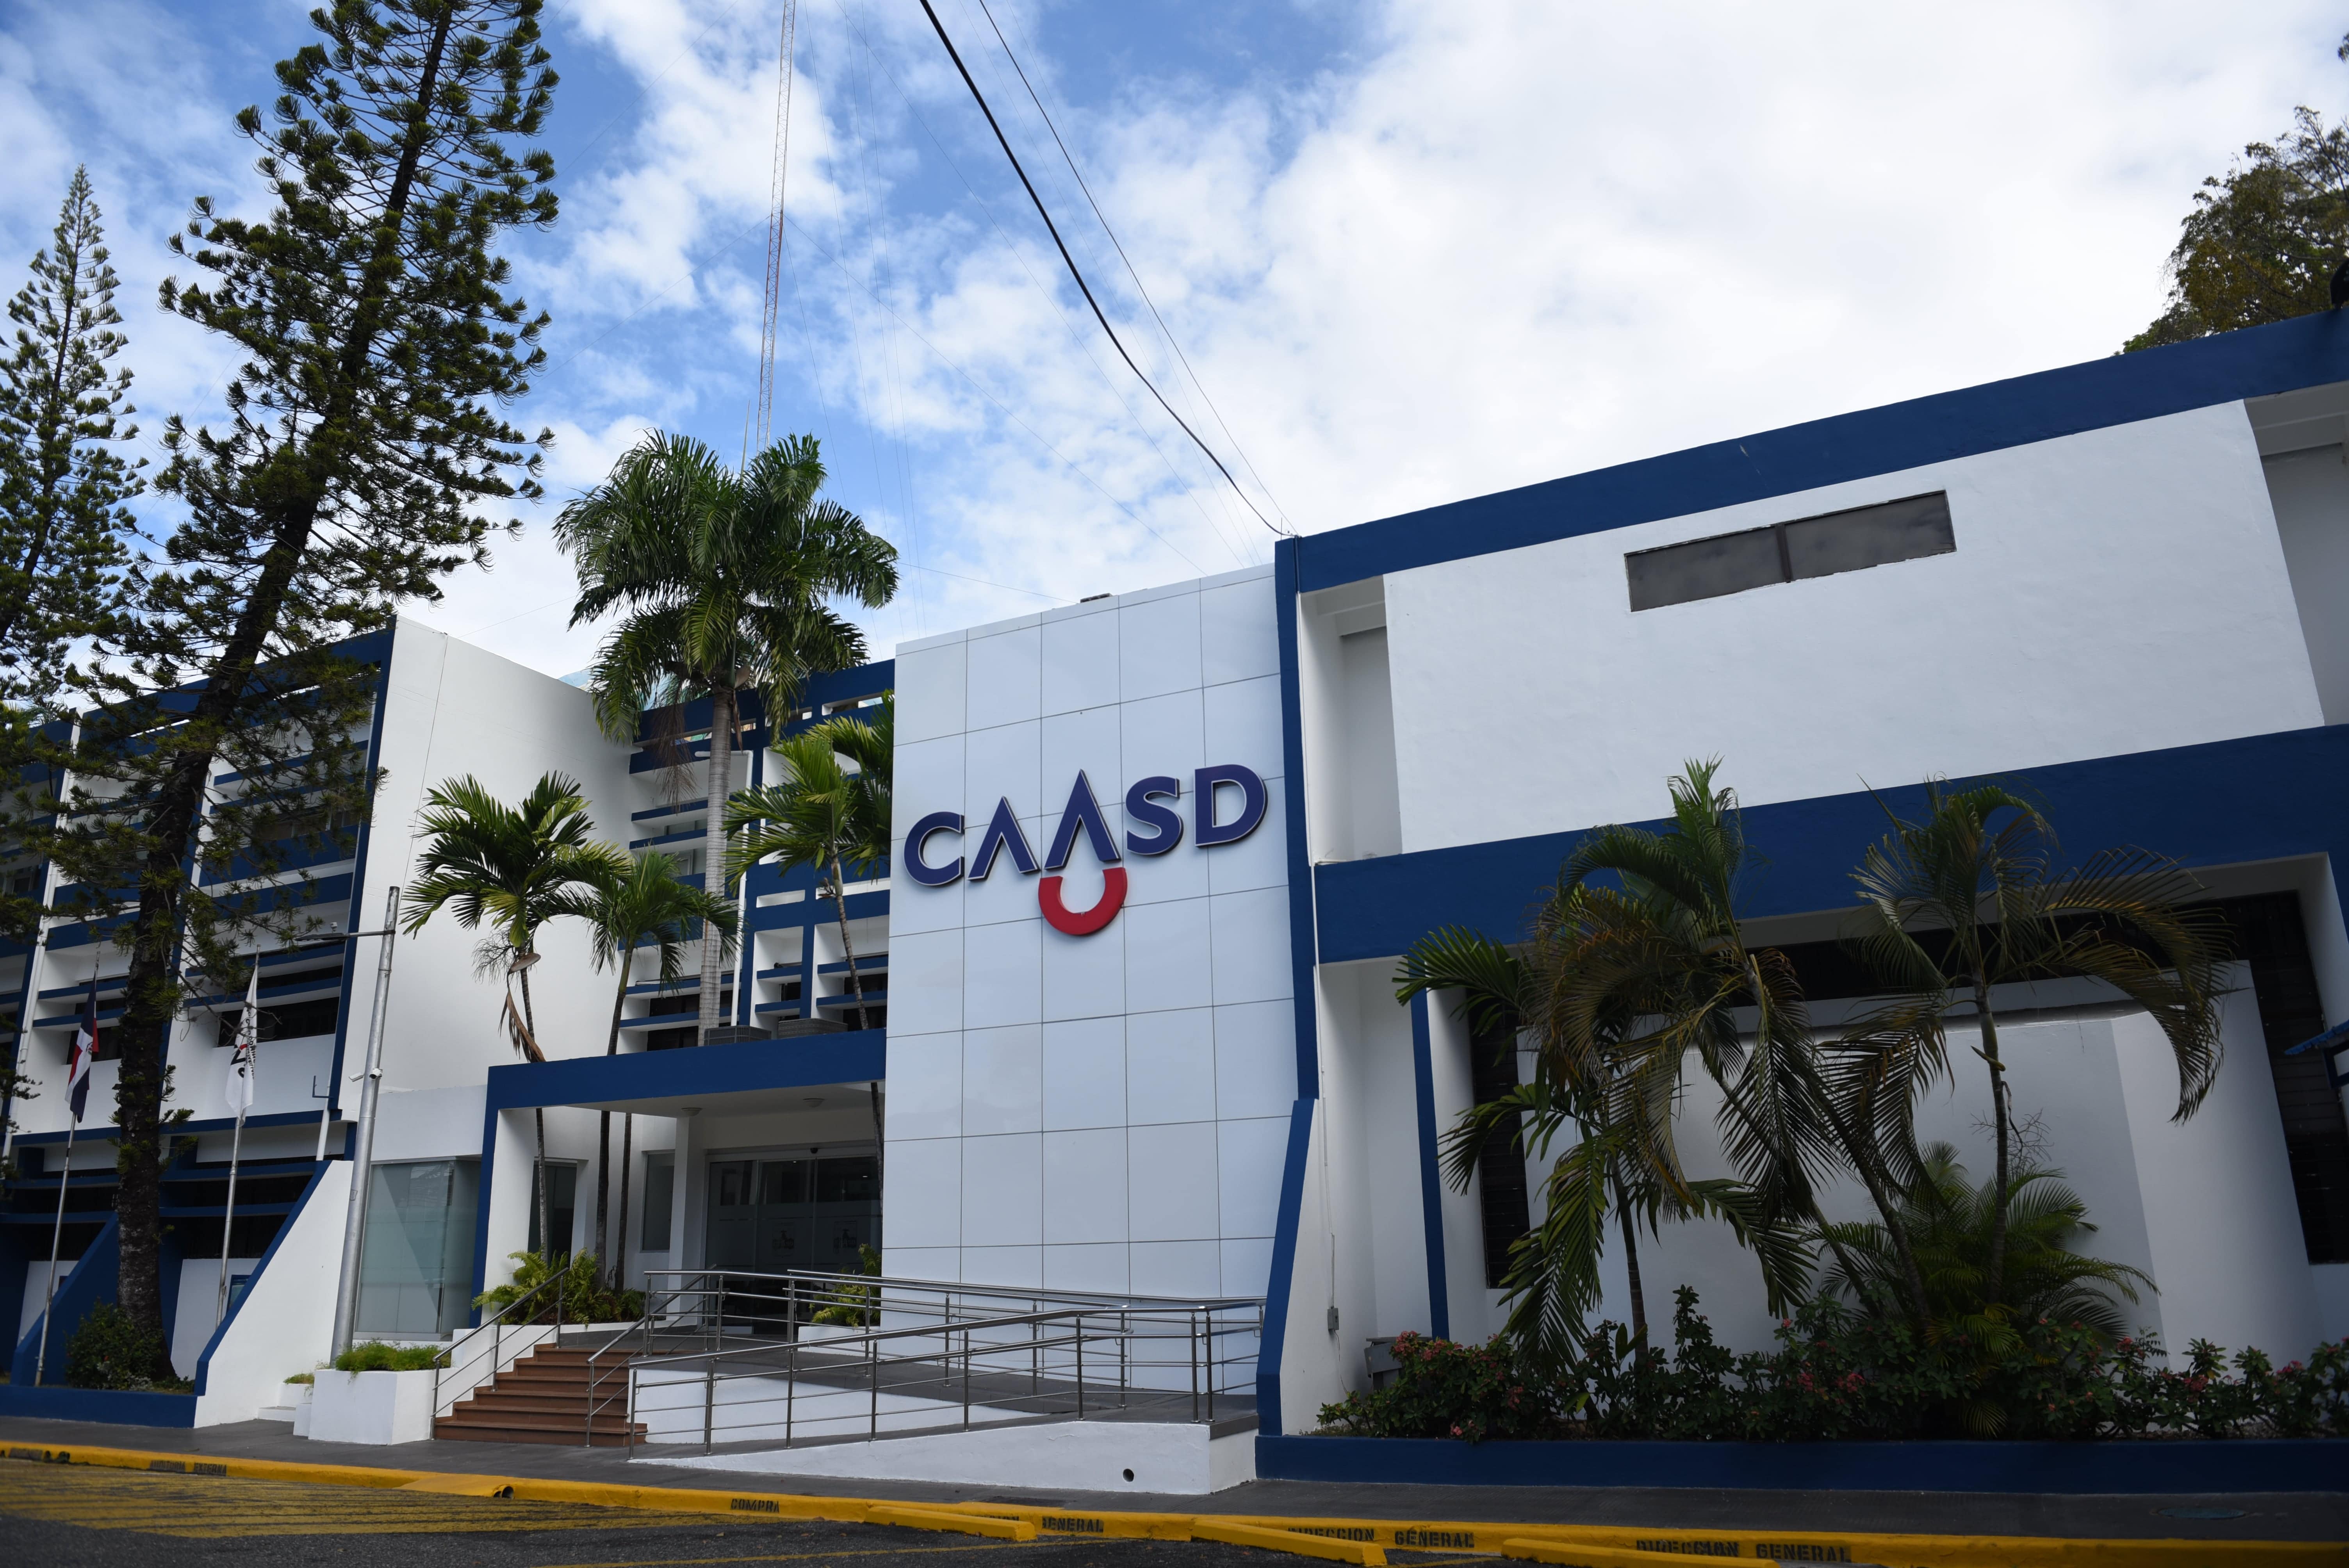 REPÚBLICA DOMINICANA: CAASD informa sobre aumento de la producción de agua potable; se sitúa en 406.38 millones de galones diarios